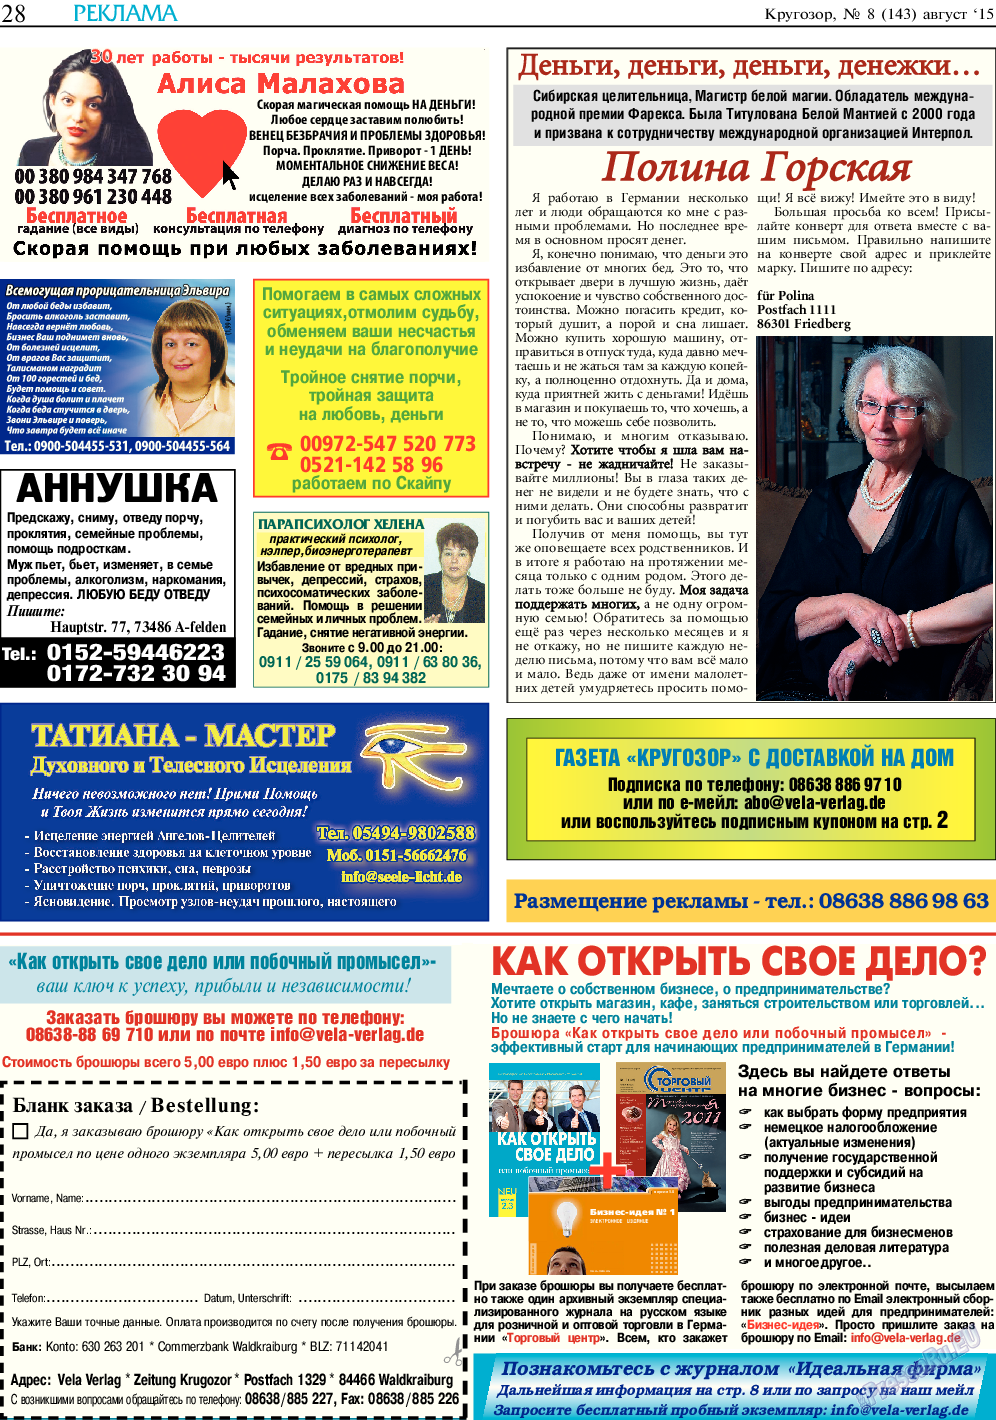 Кругозор, газета. 2015 №8 стр.28